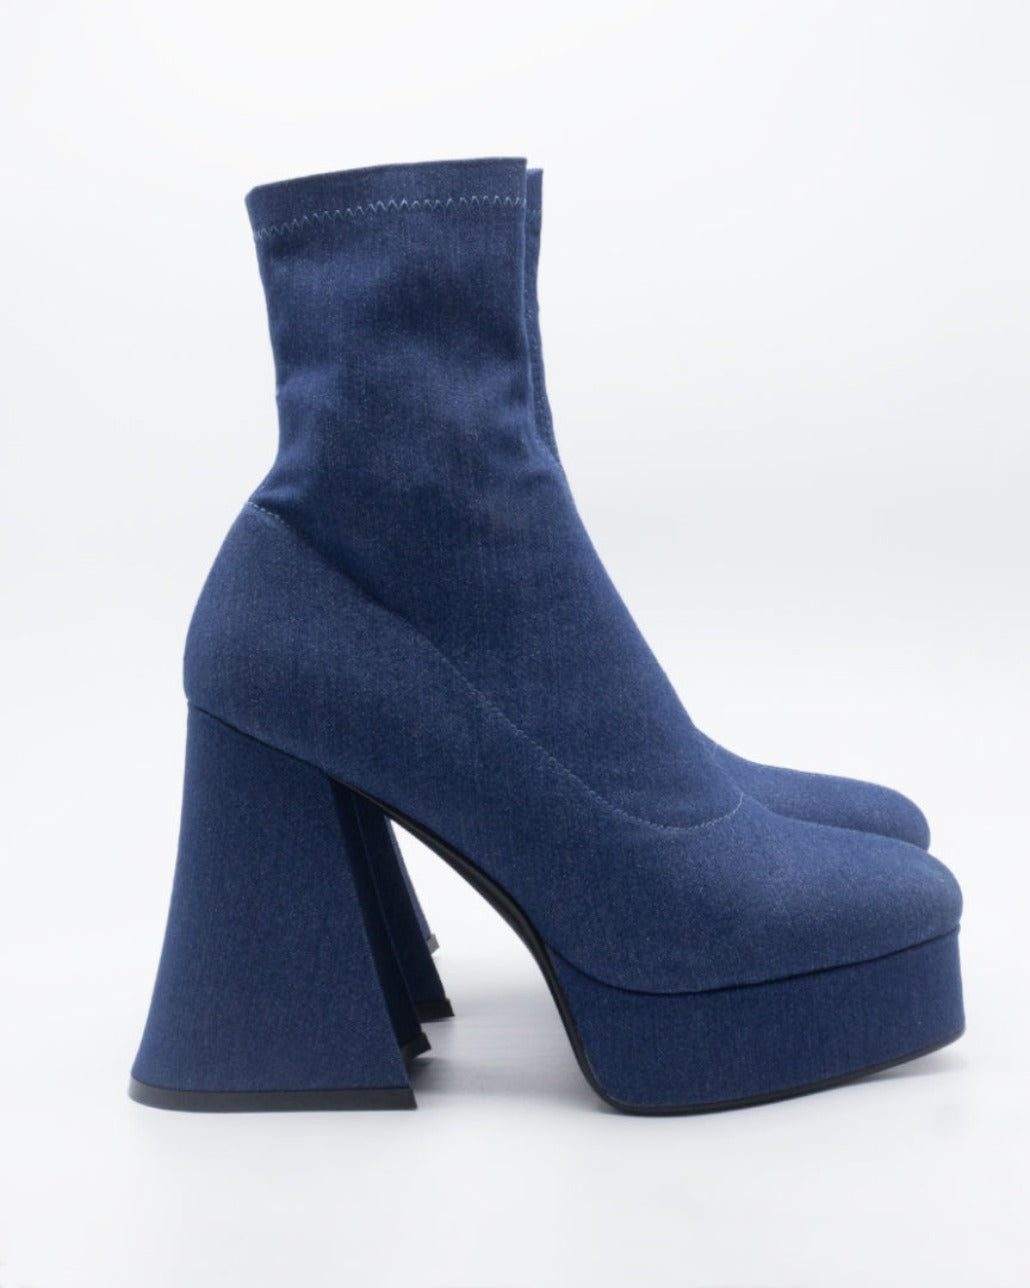 Image of Fashion Killer Platform Boots In Blue Denim